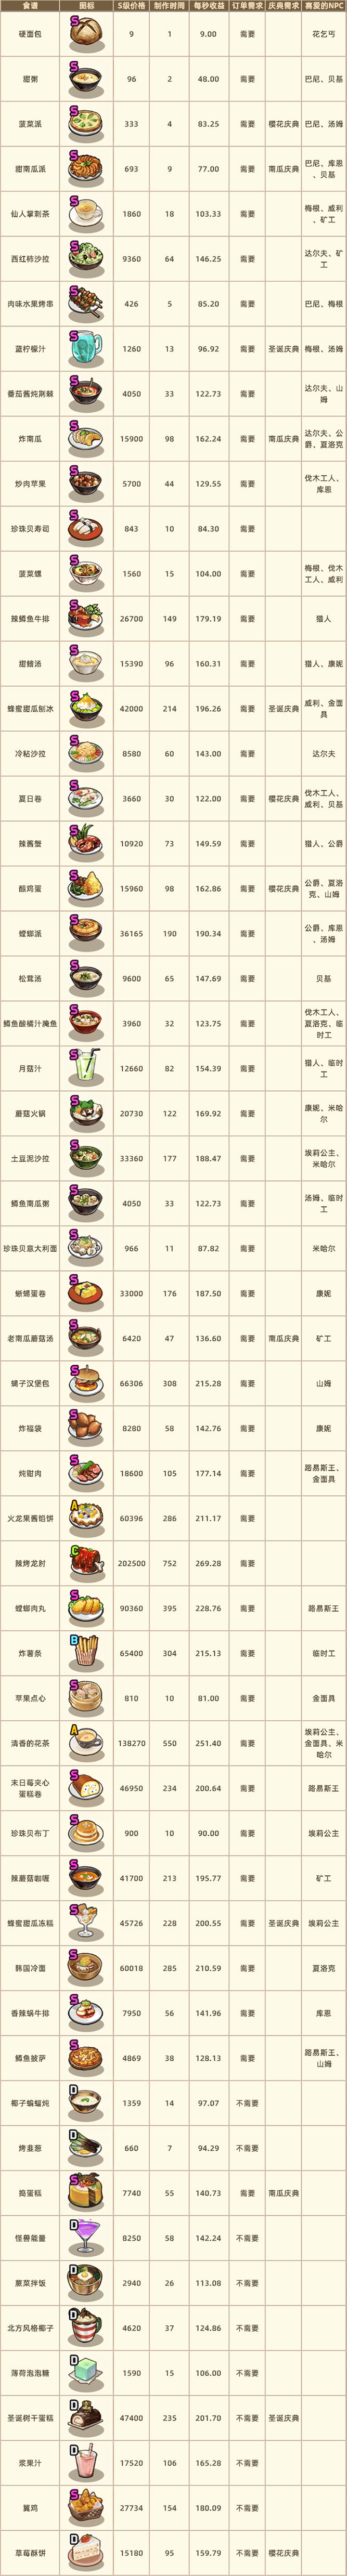 流浪餐厅厨神菜谱选择指南 菜谱价格、收益及NPC喜好数据一览